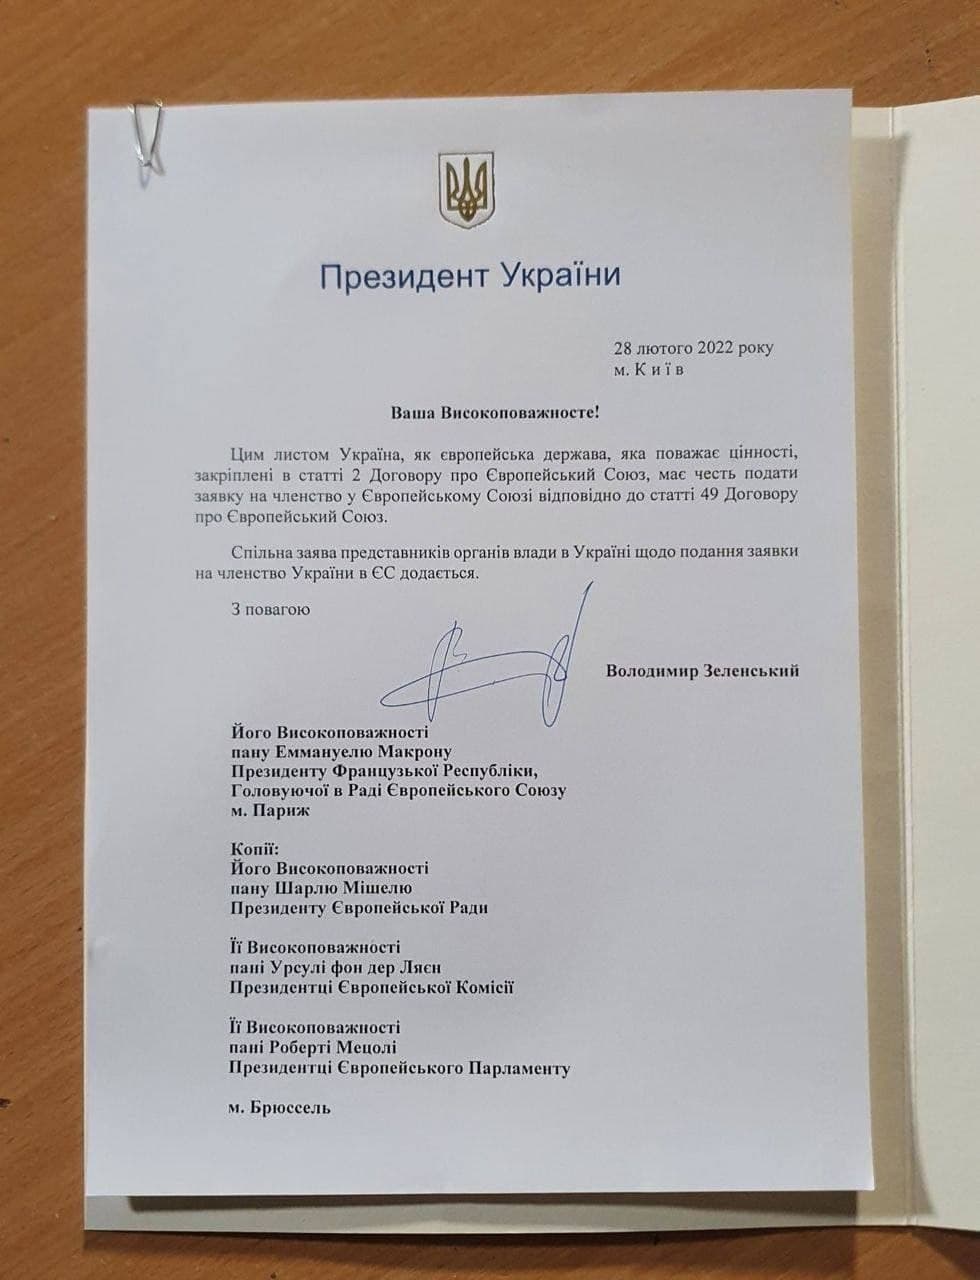 Заявка на членство Украины в ЕС